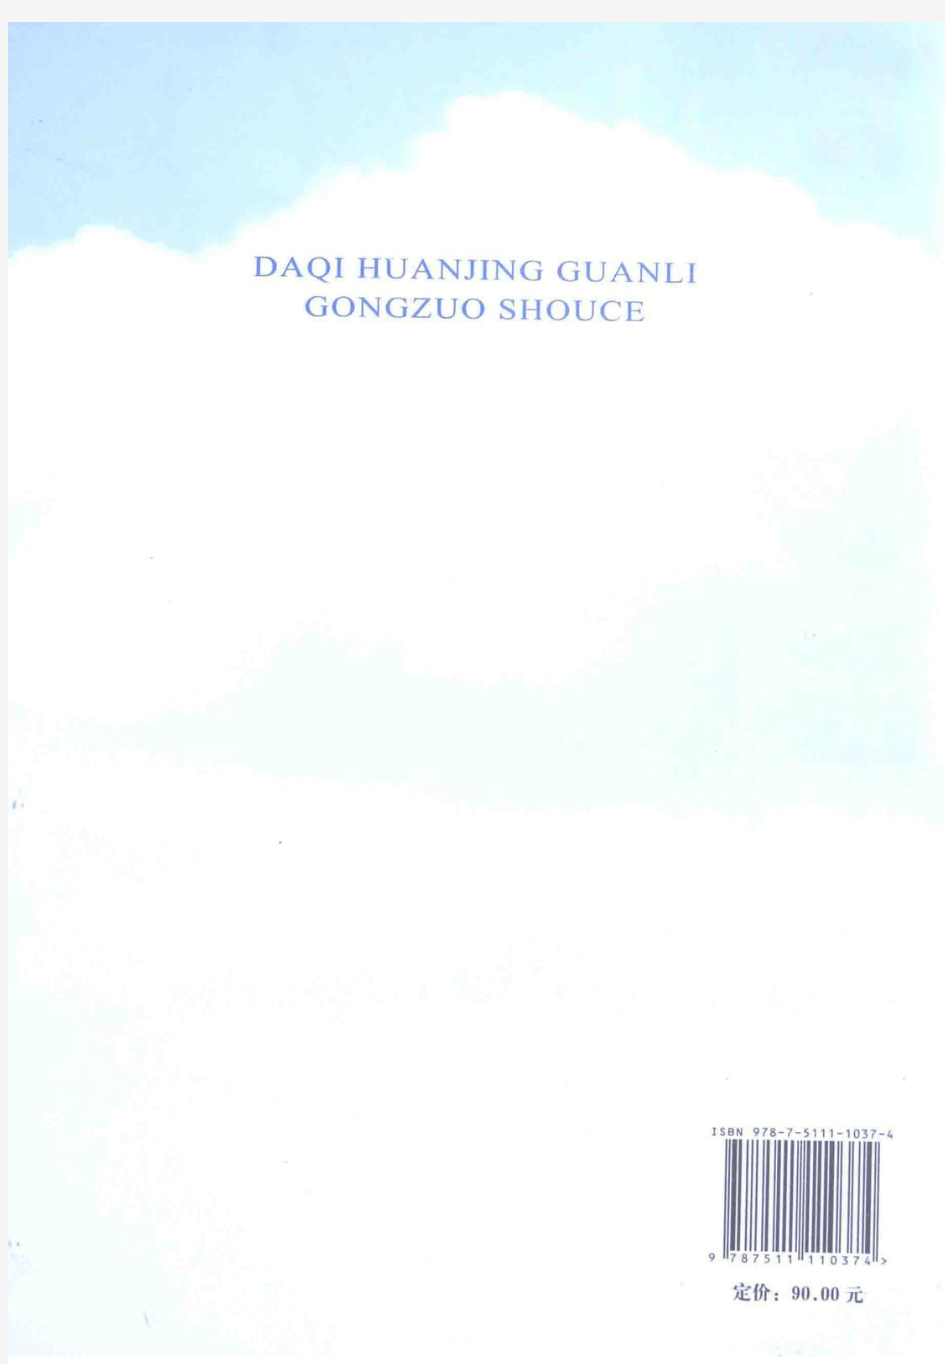 大气环境管理工作手册(上册)